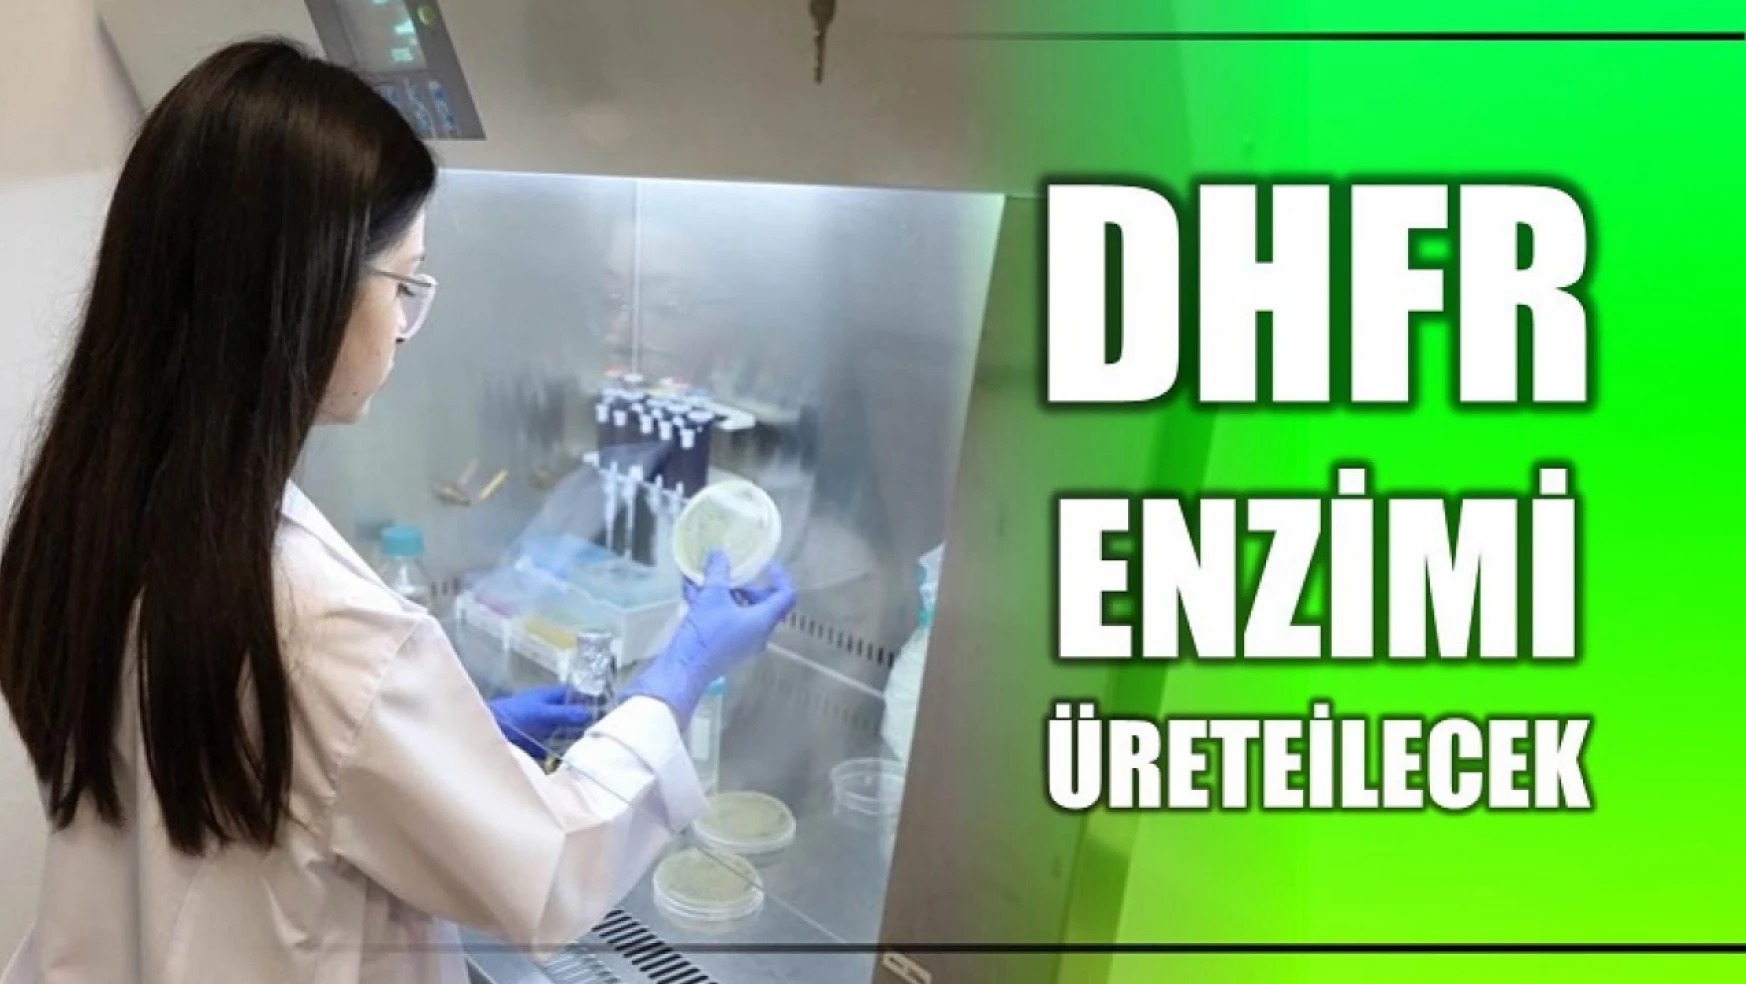 BARÜ'nün projesiyle DHFR enzimi üretilecek